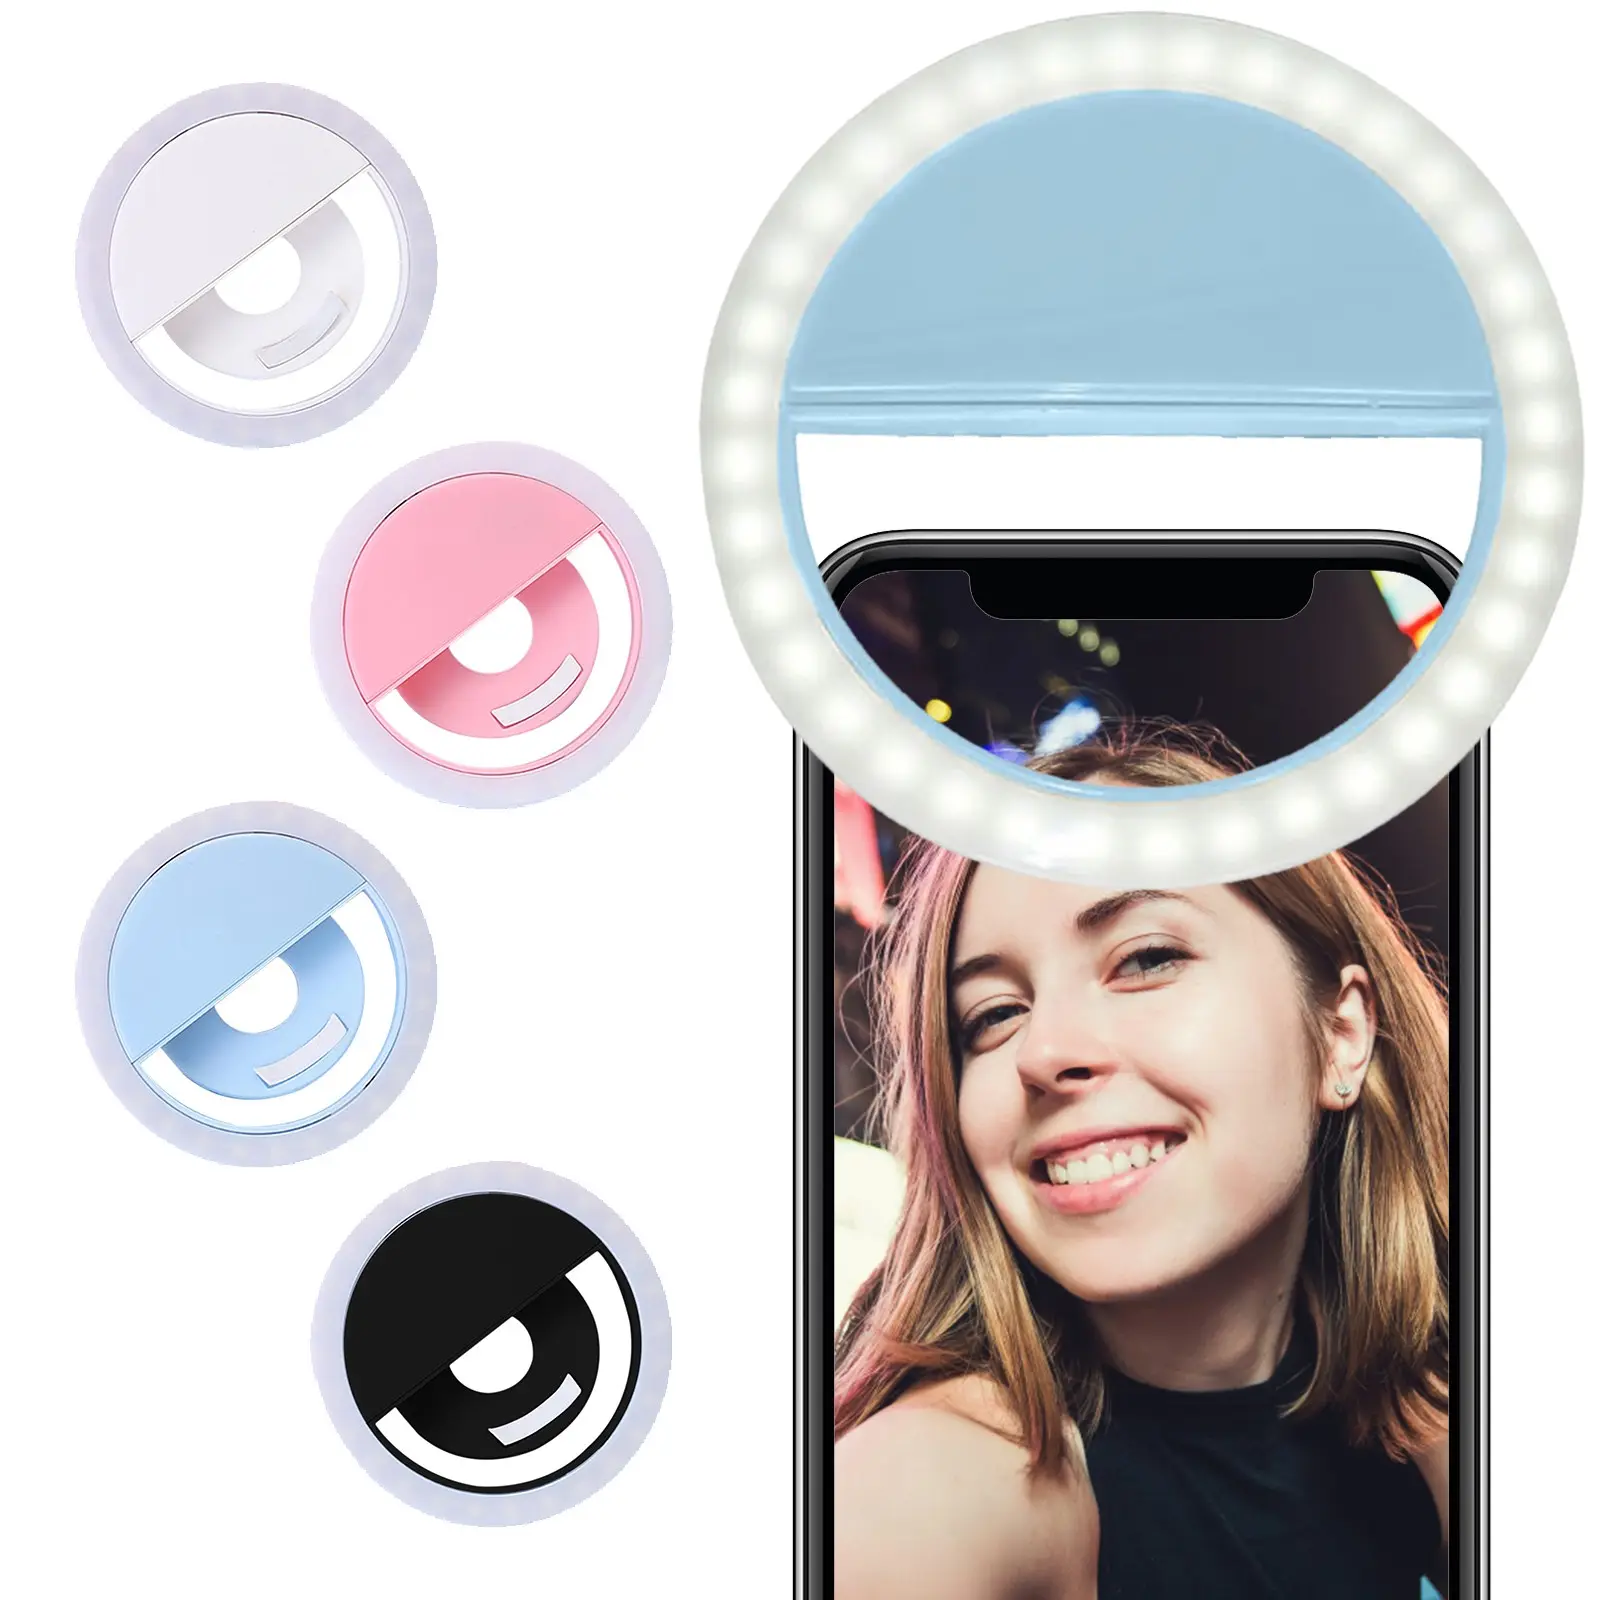 טלפון נייד Led Selfie טבעת אור קליפ על, usb נטענת מעגל קטן איפור Selfie Led טבעת אור עבור טלפון